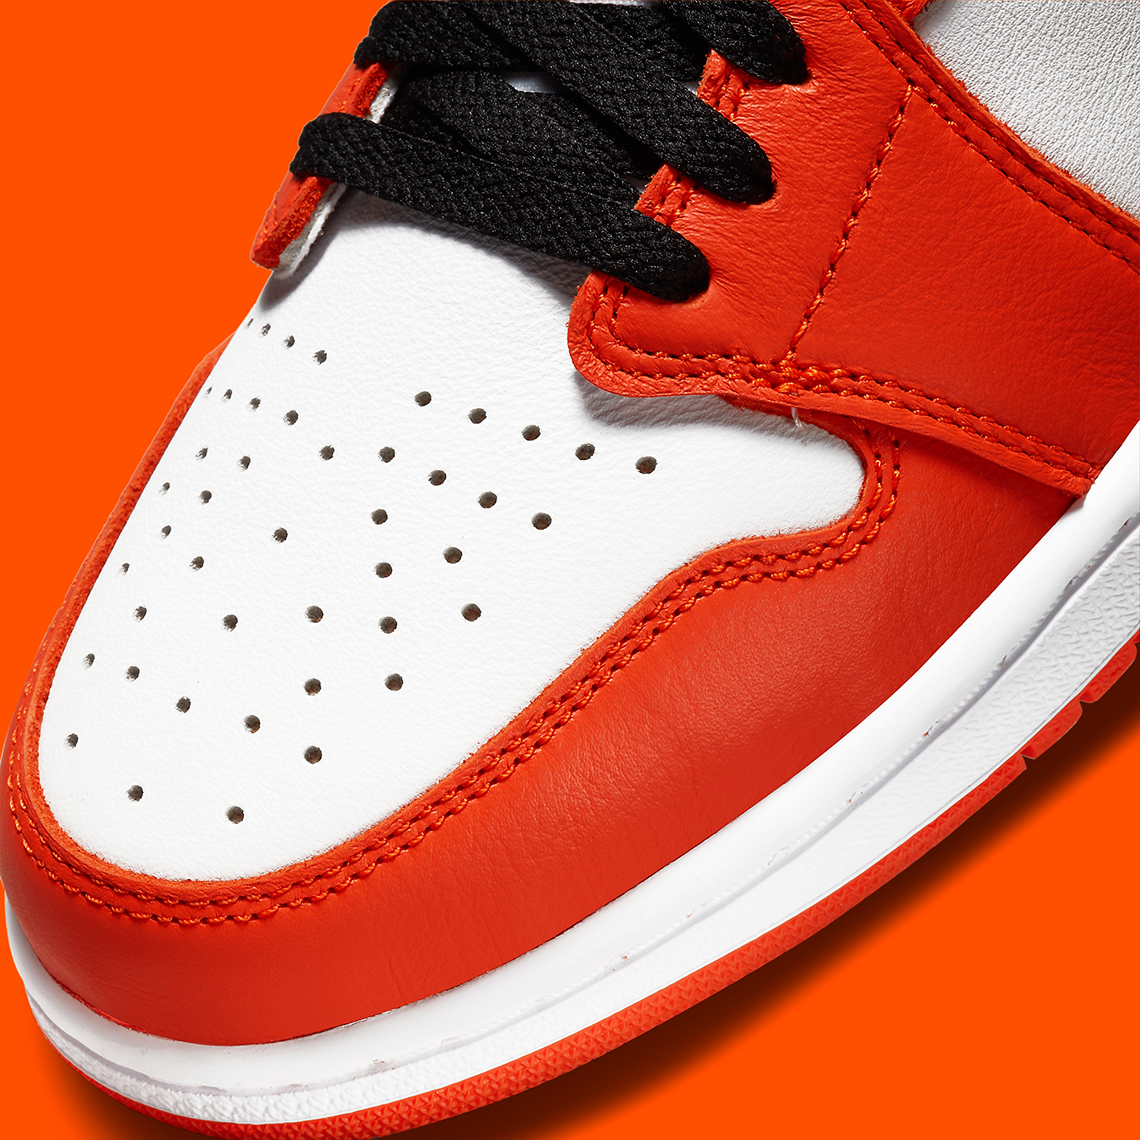 Air Jordan 1 Low OG Starfish CZ0790-801 Release | SneakerNews.com